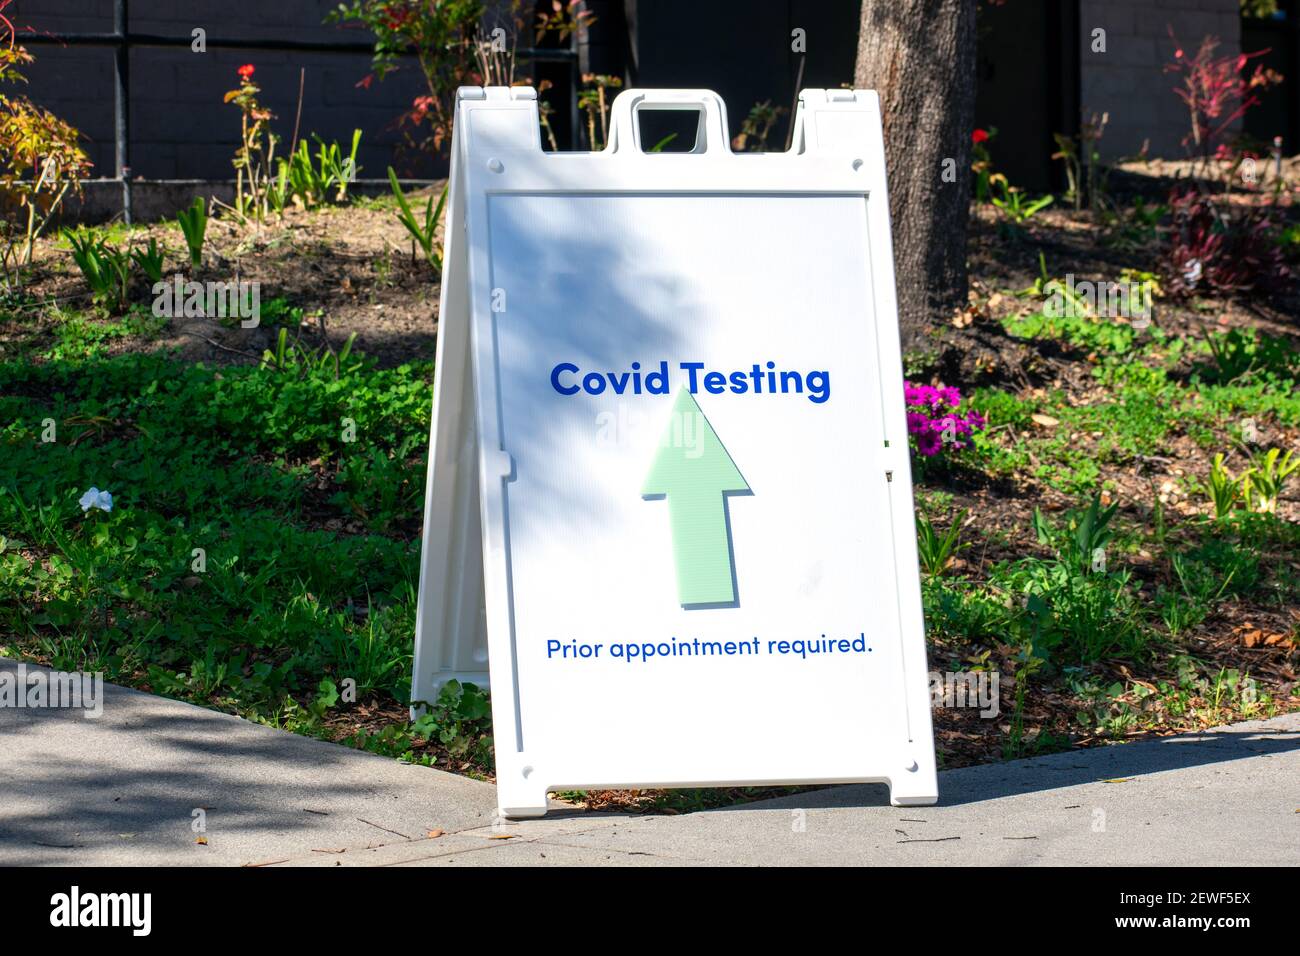 Test Covid, previo appuntamento obbligatorio con un cartello con una freccia indirizza i visitatori al centro di test del coronavirus. Foto Stock